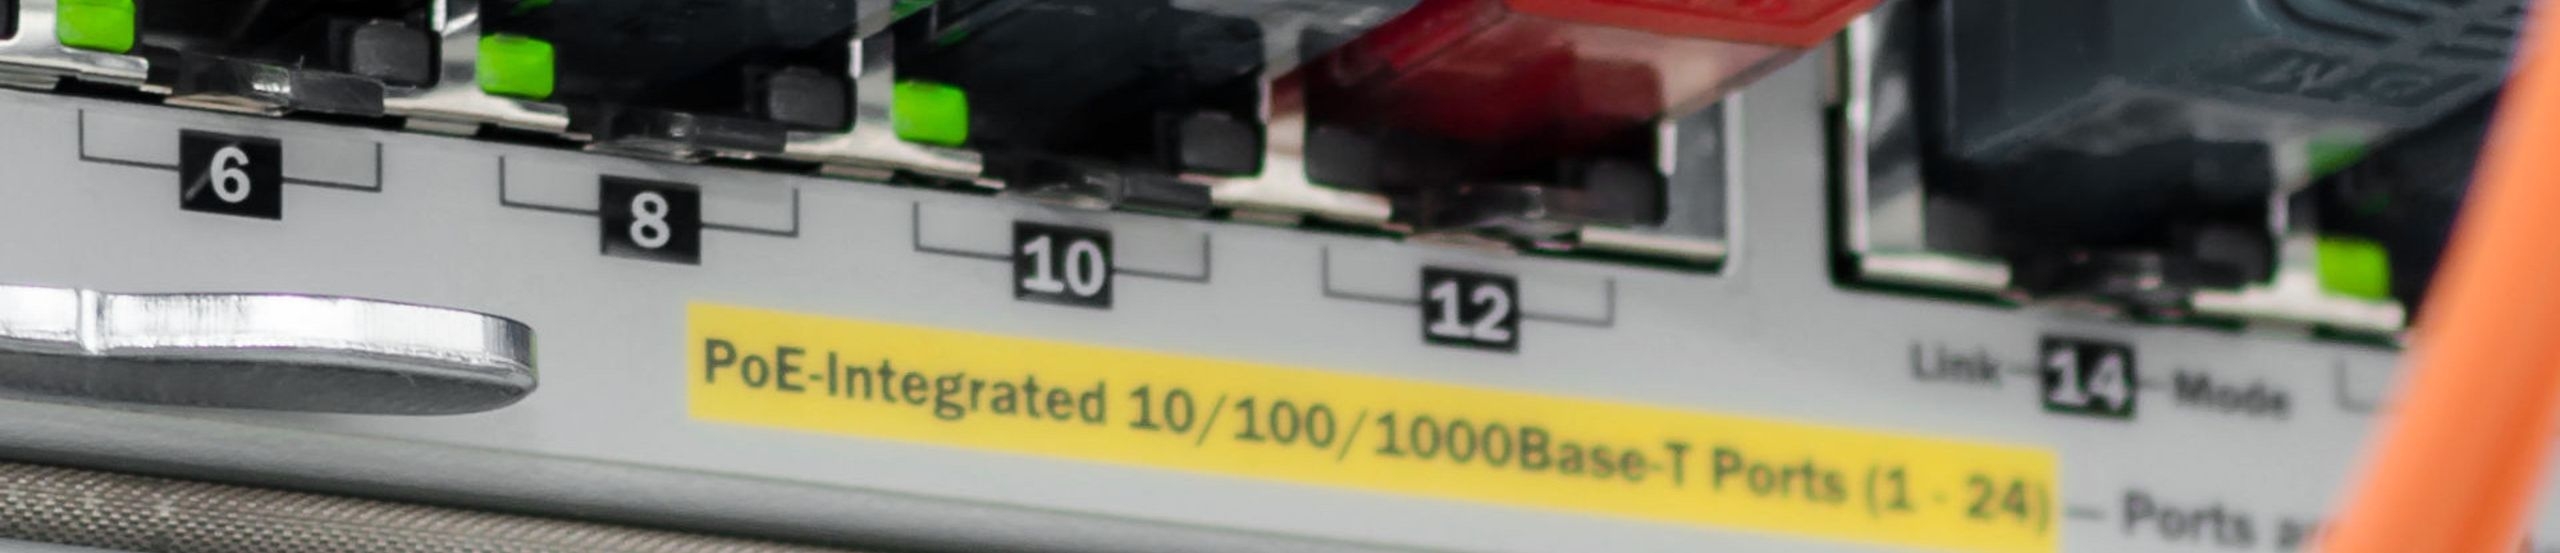 PoE-fähiger Ethernet-Switch mit Anschlusskabeln